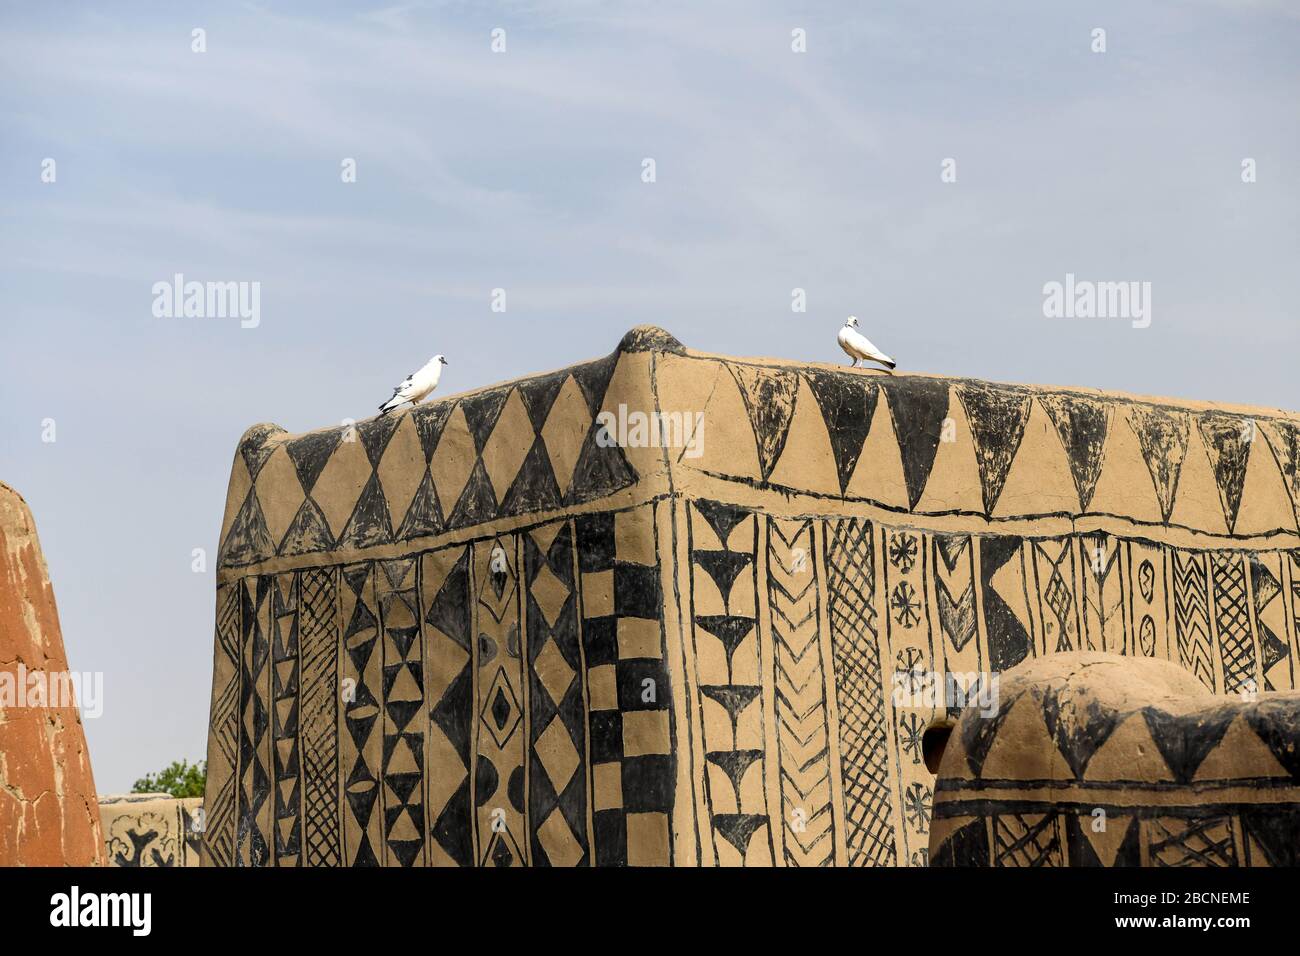 Africa, Burkina Faso, regione di Pô, Tiebele. Vista panoramica della corte reale di Tiebele. Due uccelli sono sul tetto dell'edificio Foto Stock